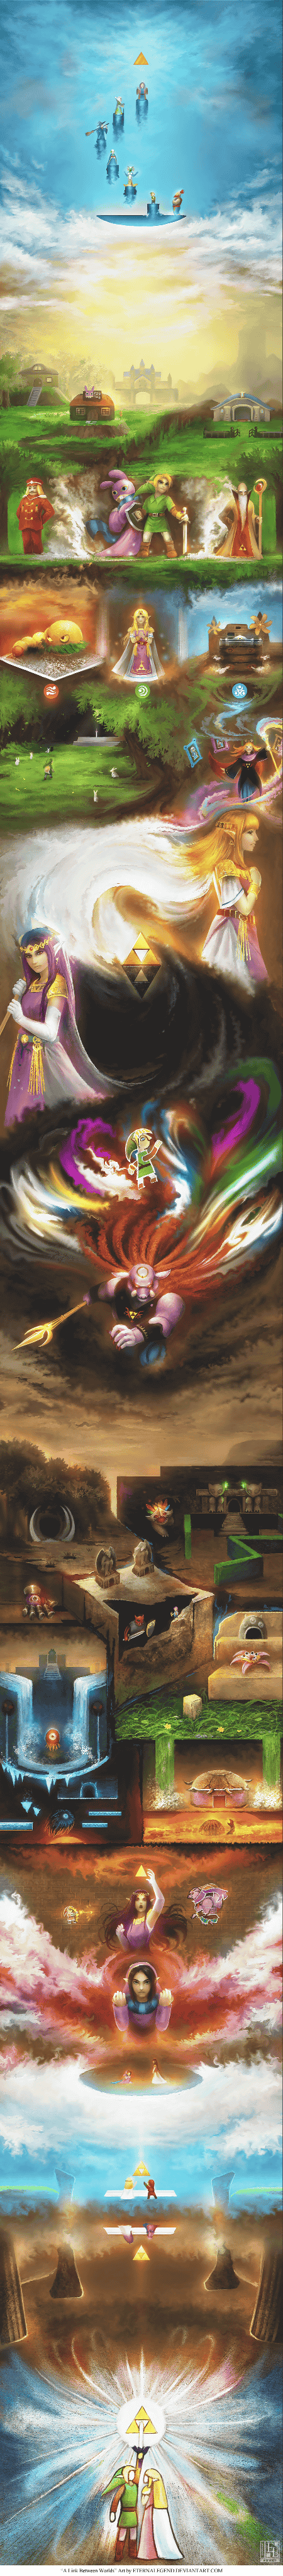 3DS「ゼルダの伝説 神々のトライフォース２」のストーリーを１枚のイラストで表現したファンアートが公開されています